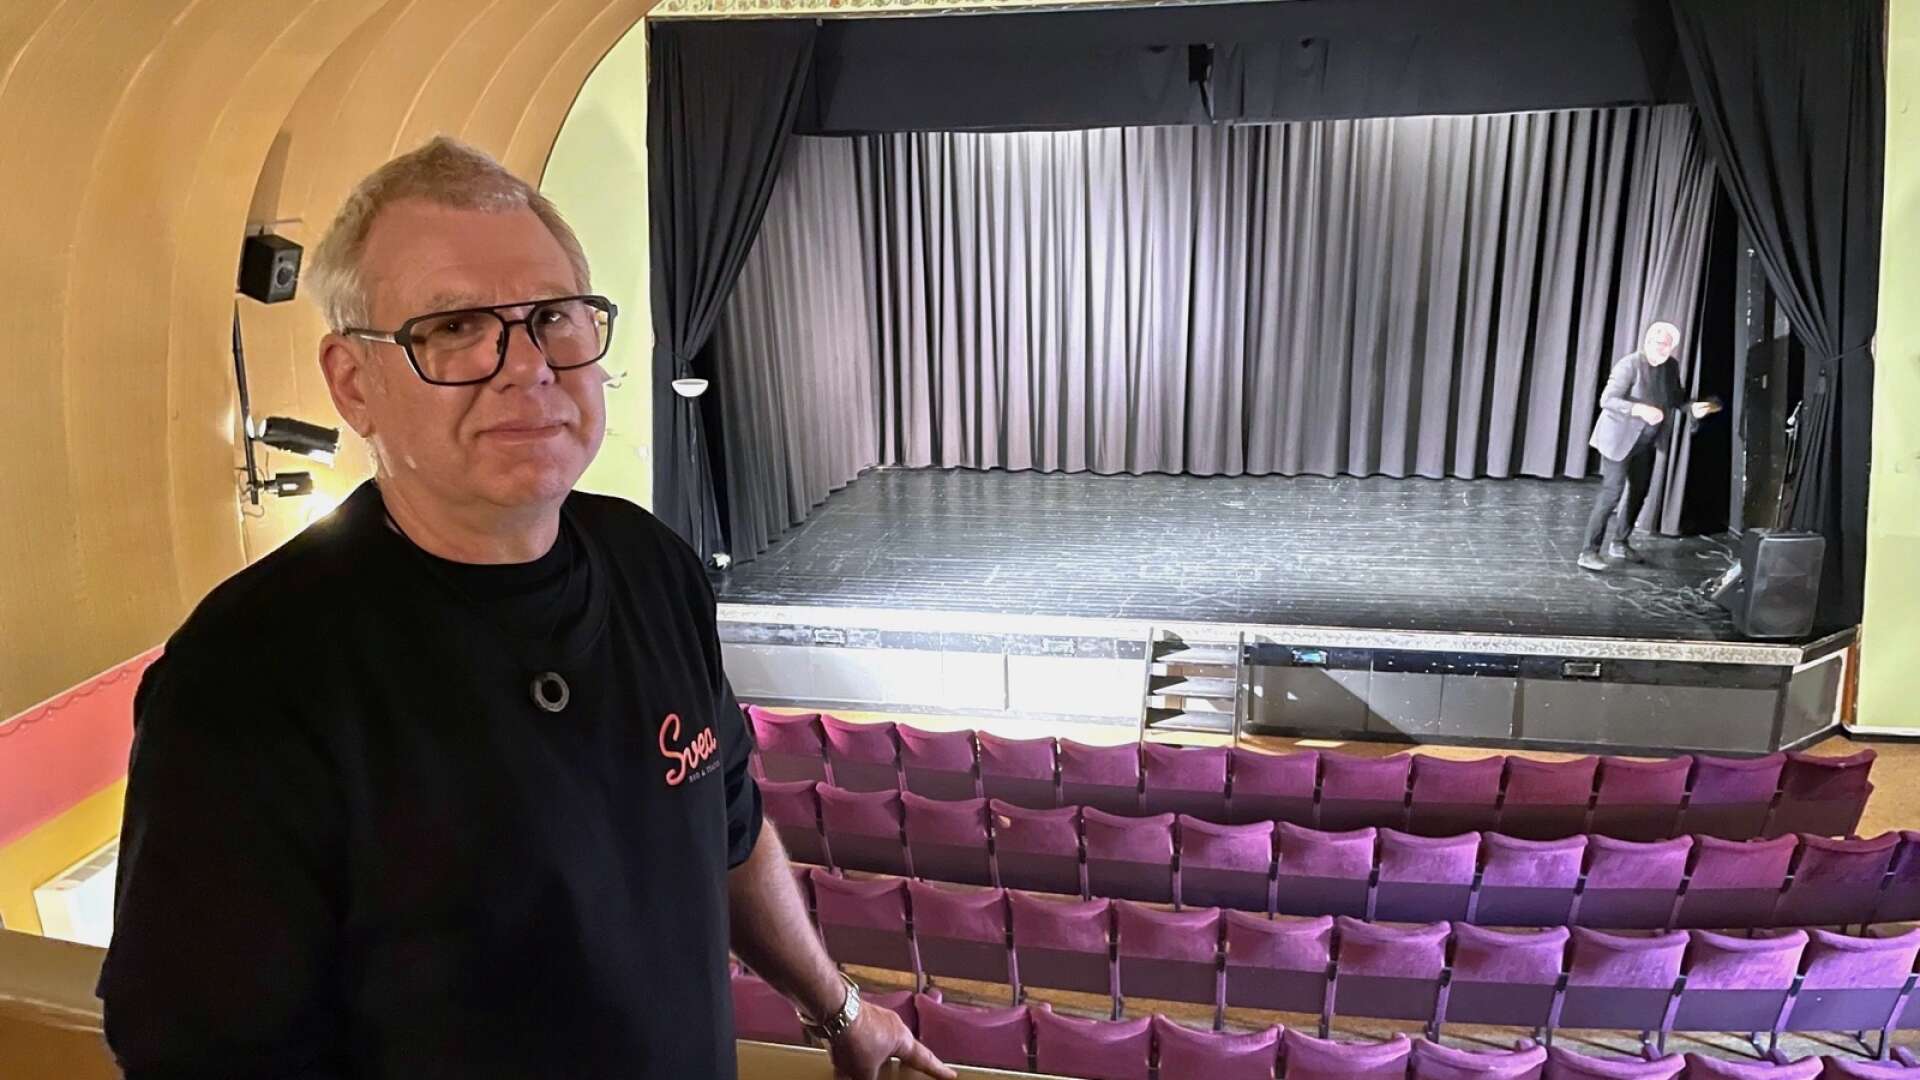 Svea bio och teater ska få en renässans som biografsalong. Bakom projektet står bland annat Håkan Jivesand, ordförande i IOGT-NTO som äger byggnaden.